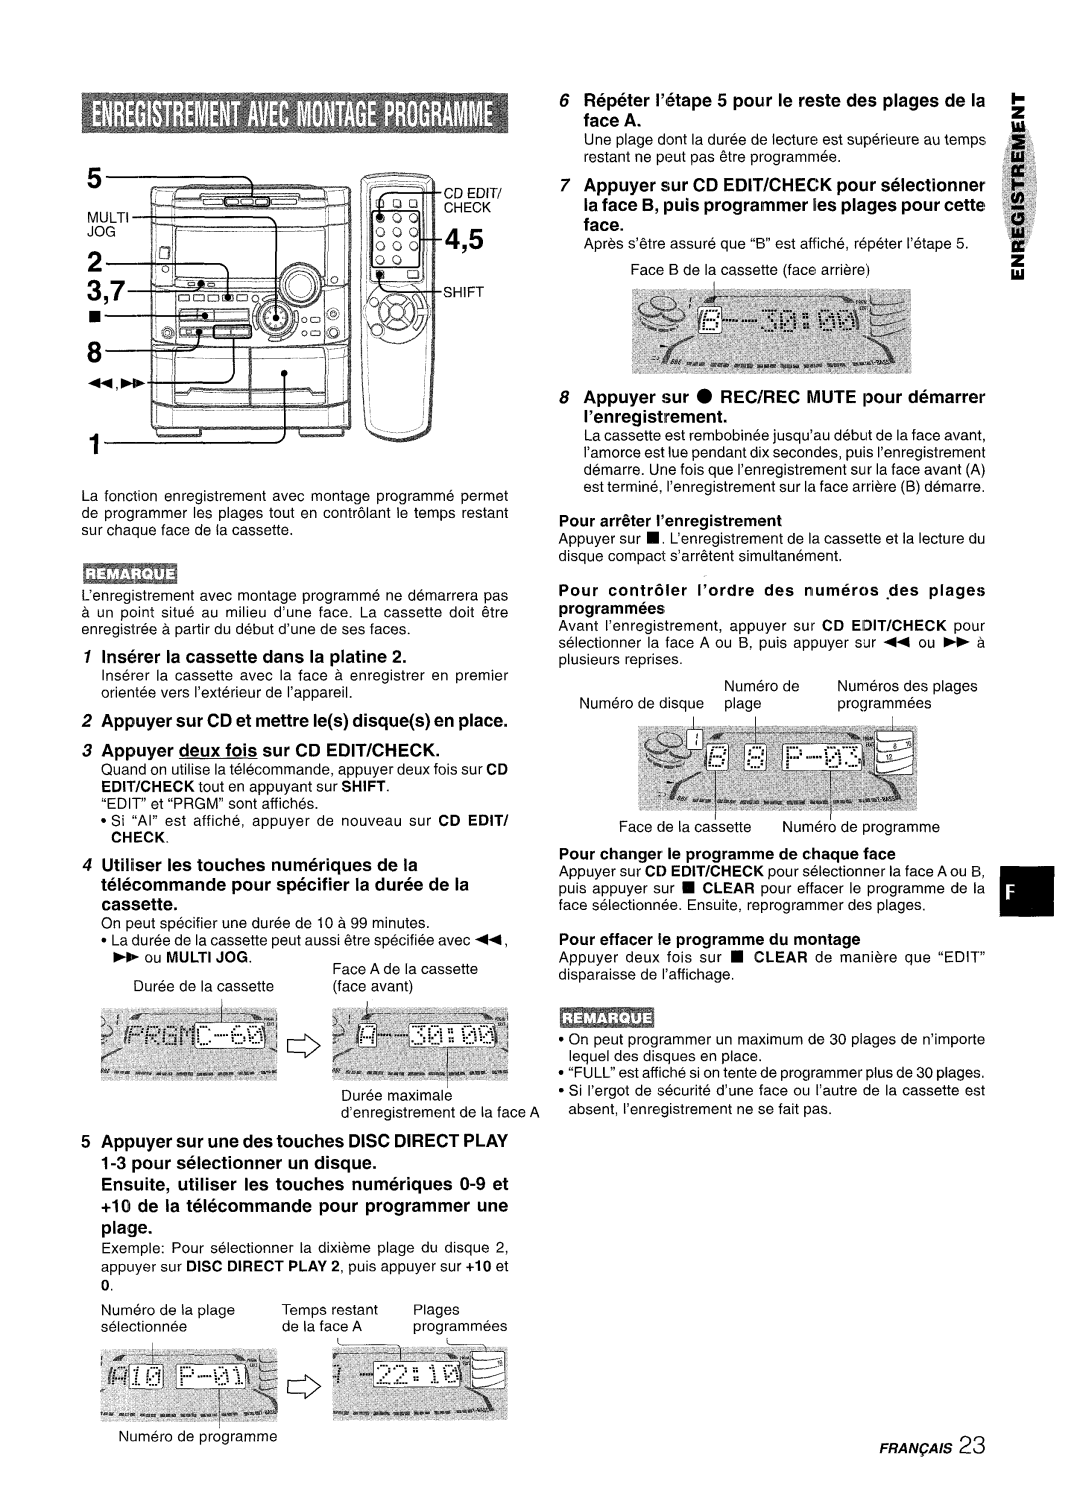 Sony NSX-A777 manual 1 lns6rer la cassette clans la platine, Appuyer deux fois sur CD EDIT/CHECK 